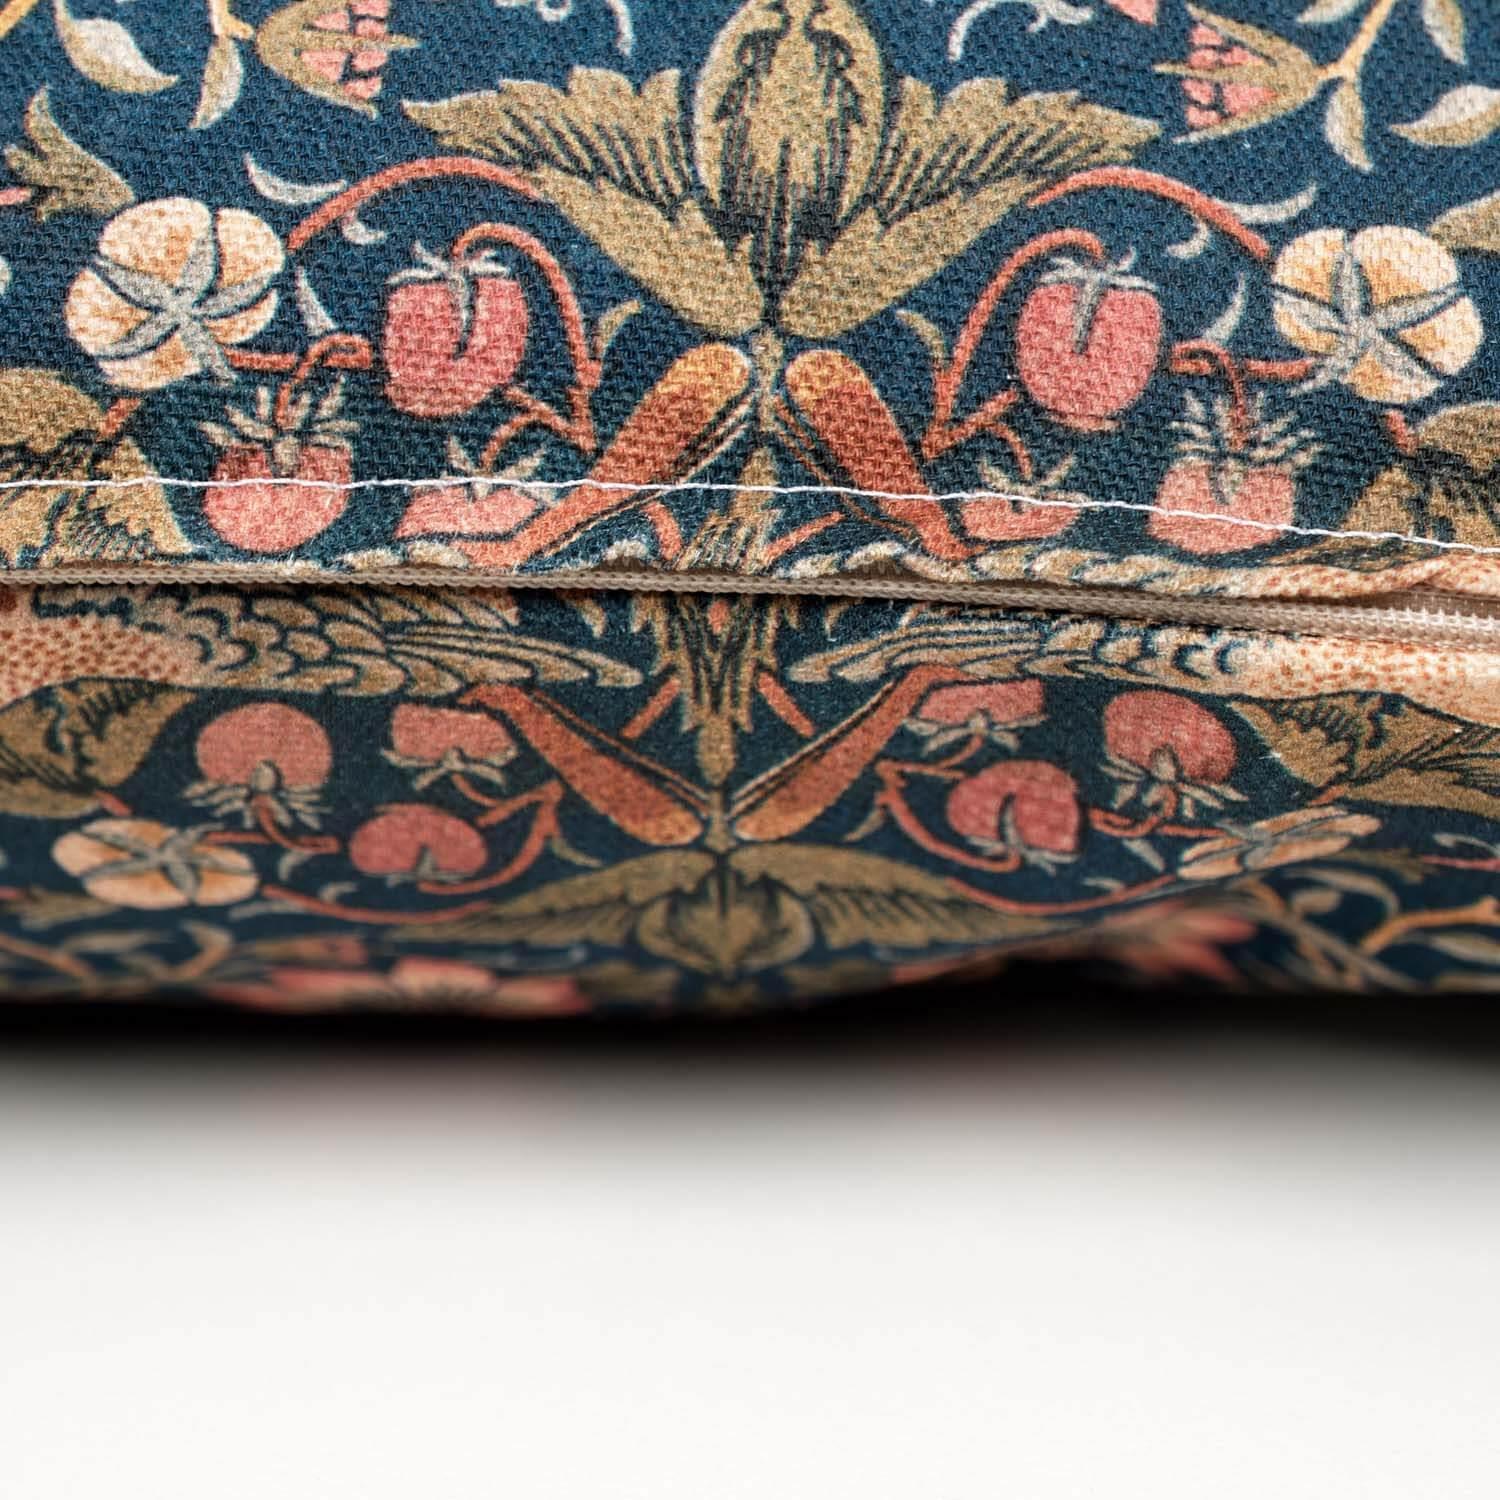 Daisy - William Morris Cushion - Handmade Cushions UK - WeLoveCushions